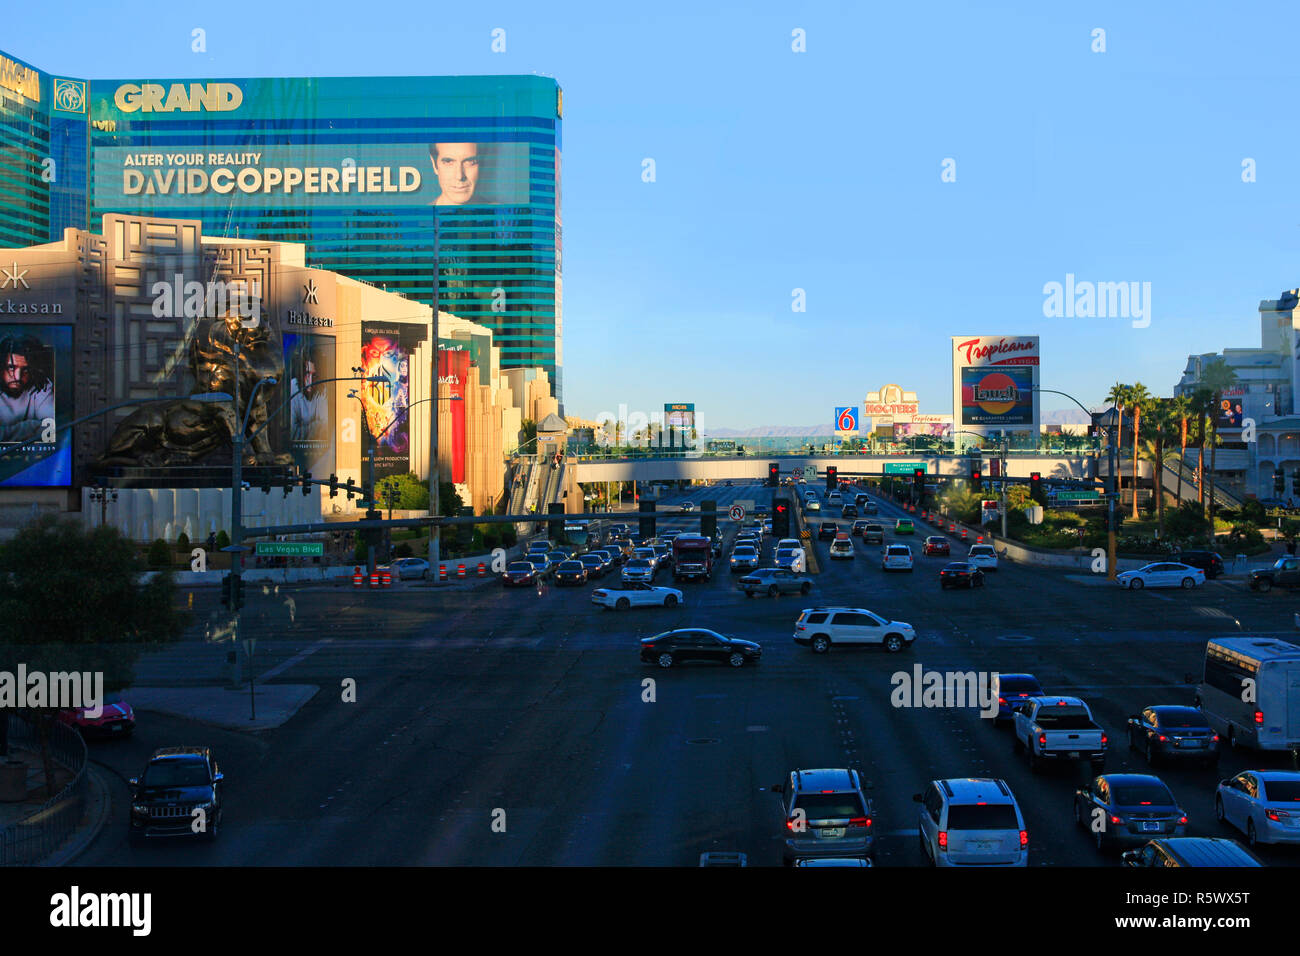 An der Kreuzung von W. Tropicana Ave und S Las Vegas Blvd und der Grand Hotel im Hintergrund in Las Vegas, NV Stockfoto